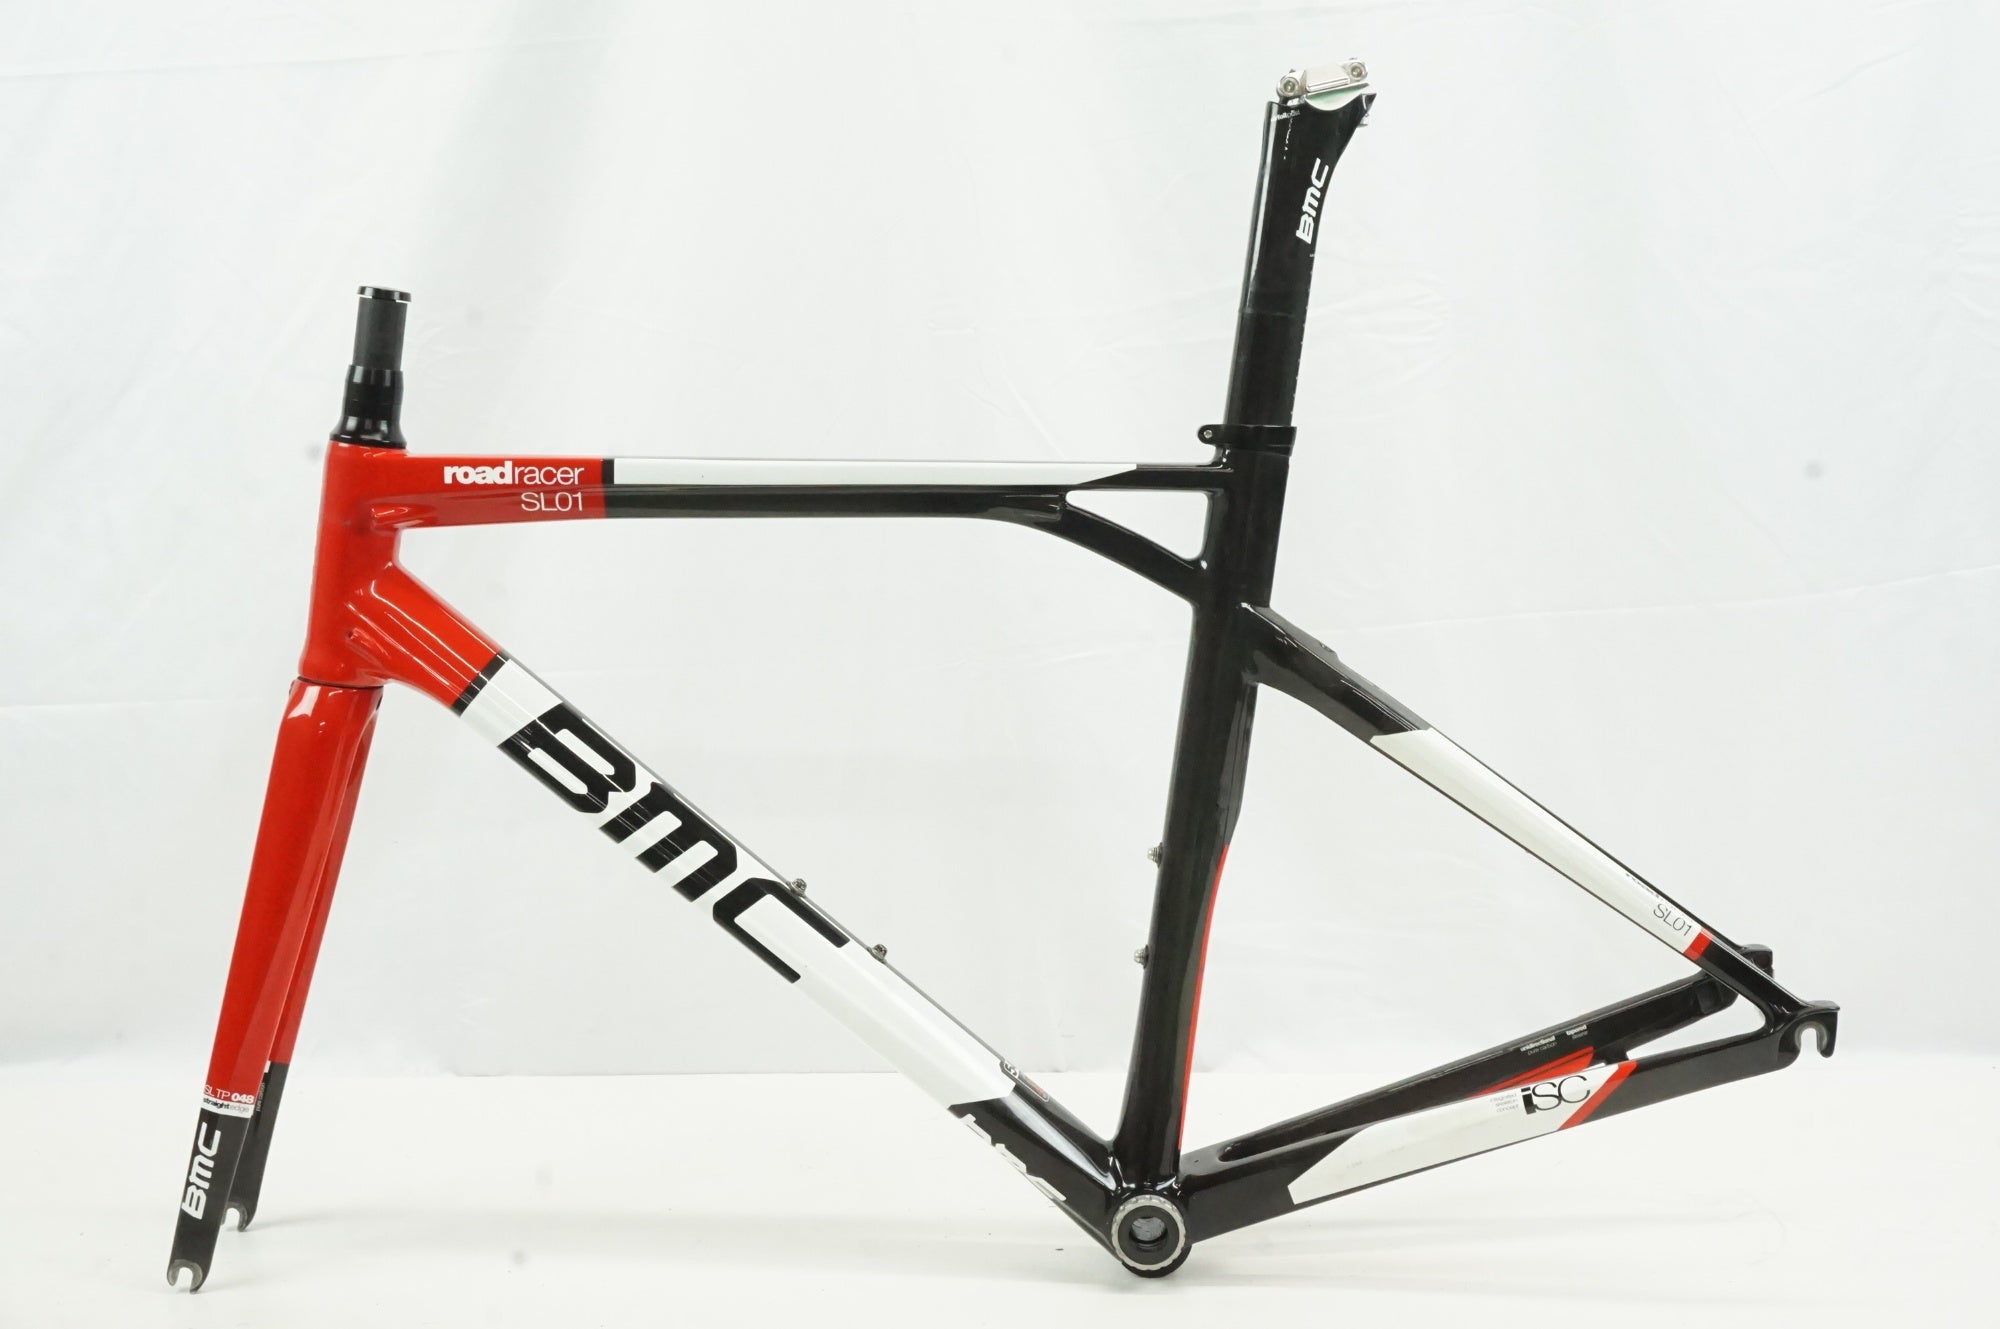 ジャンク BMC 「ビーエムシー」 ROADRACER SL01 2012年モデル フレームセット / 宇都宮店